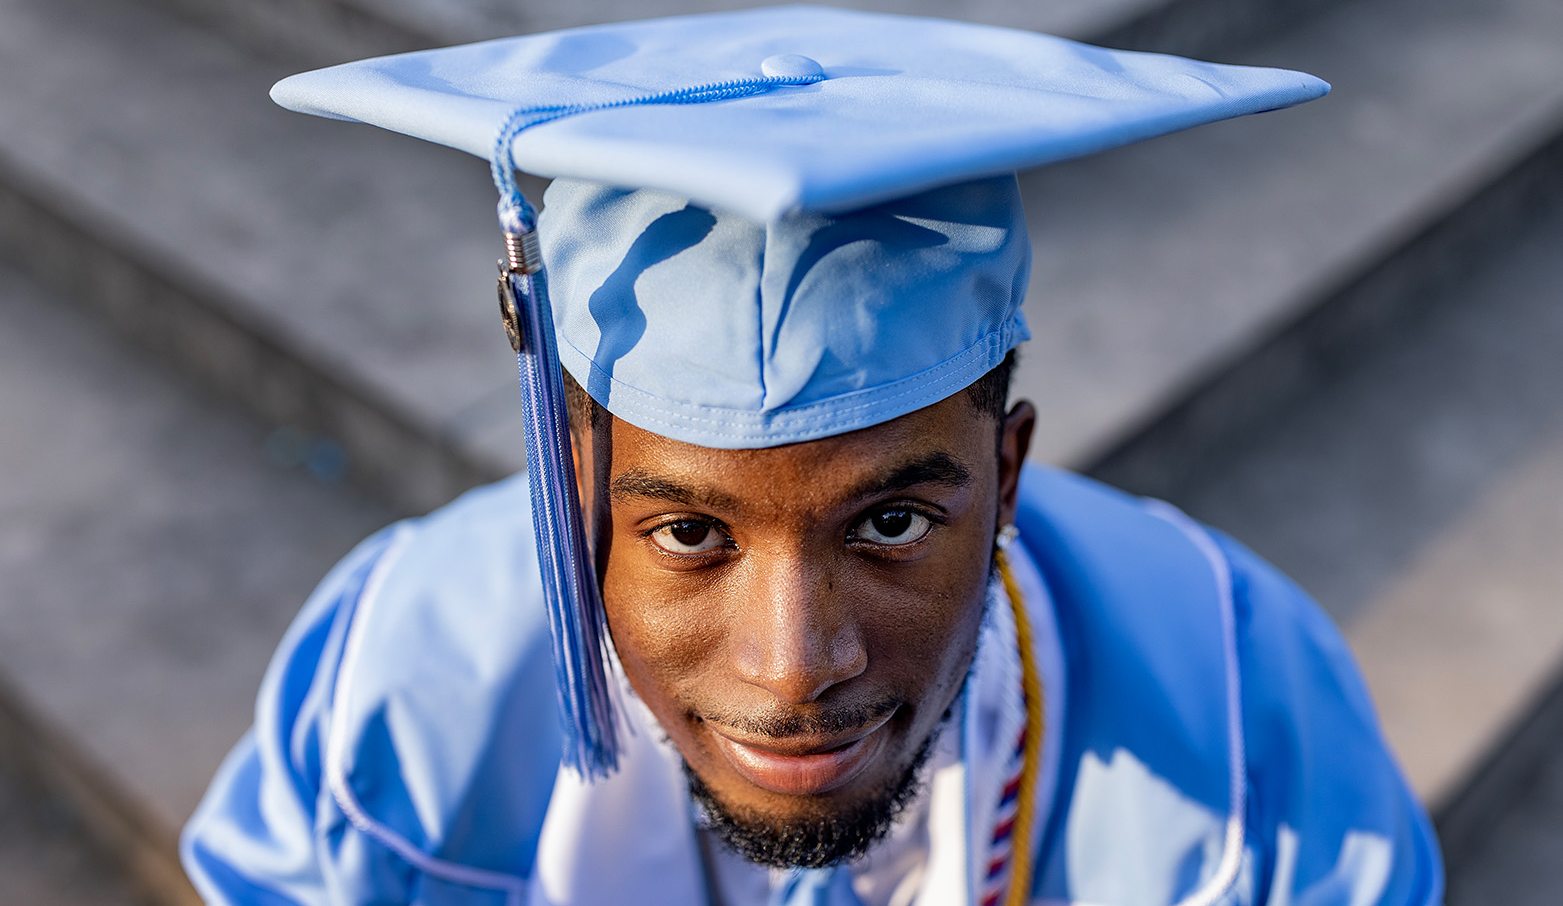 A UNC students wearing a graduation cap.